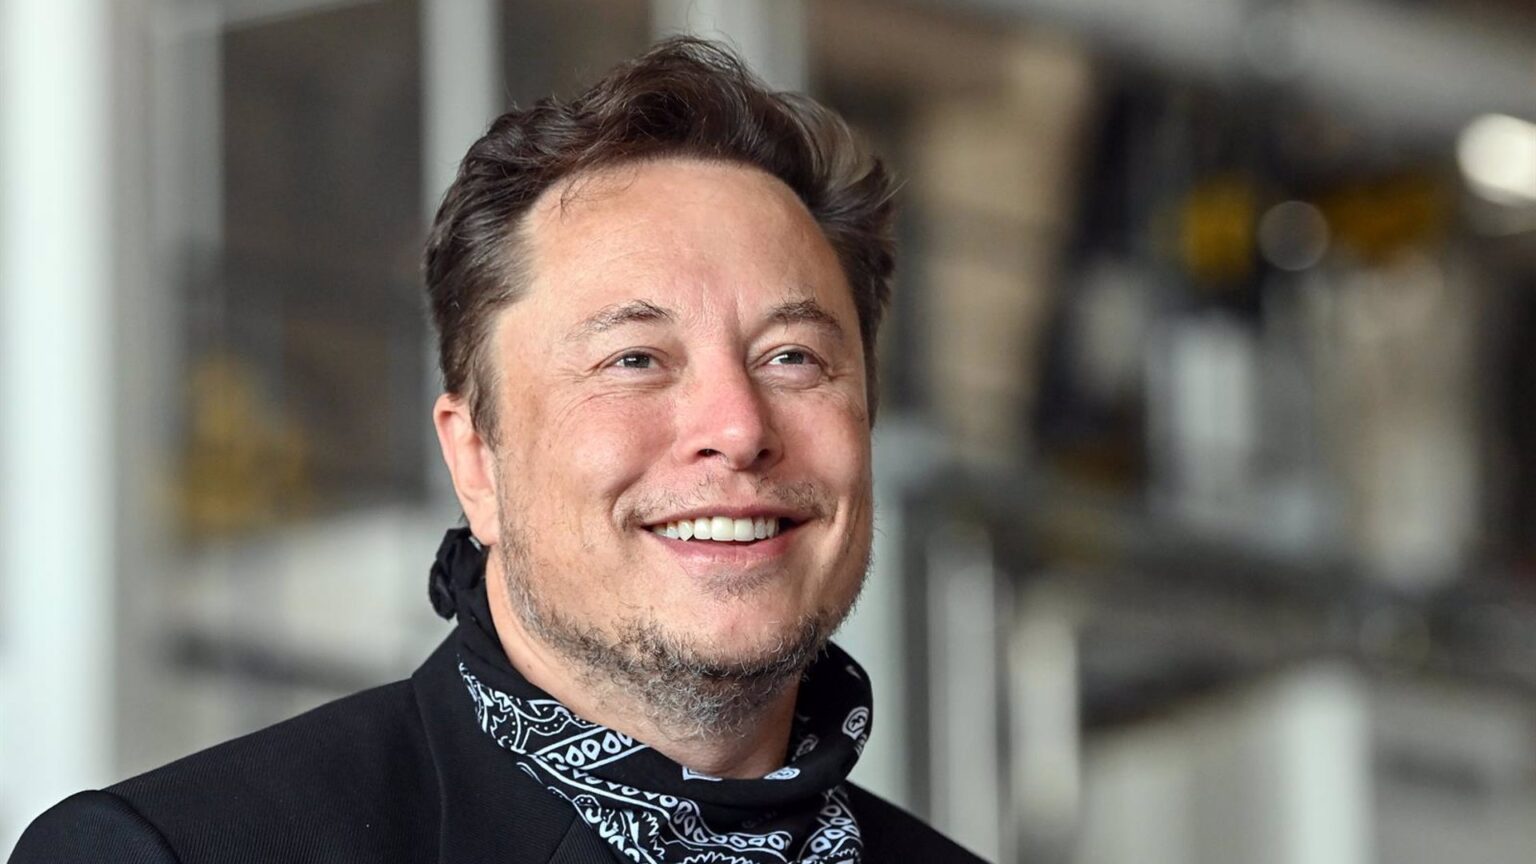 Musk planea recortar un 10% la plantilla de Tesla por un «mal presentimiento» sobre la economía